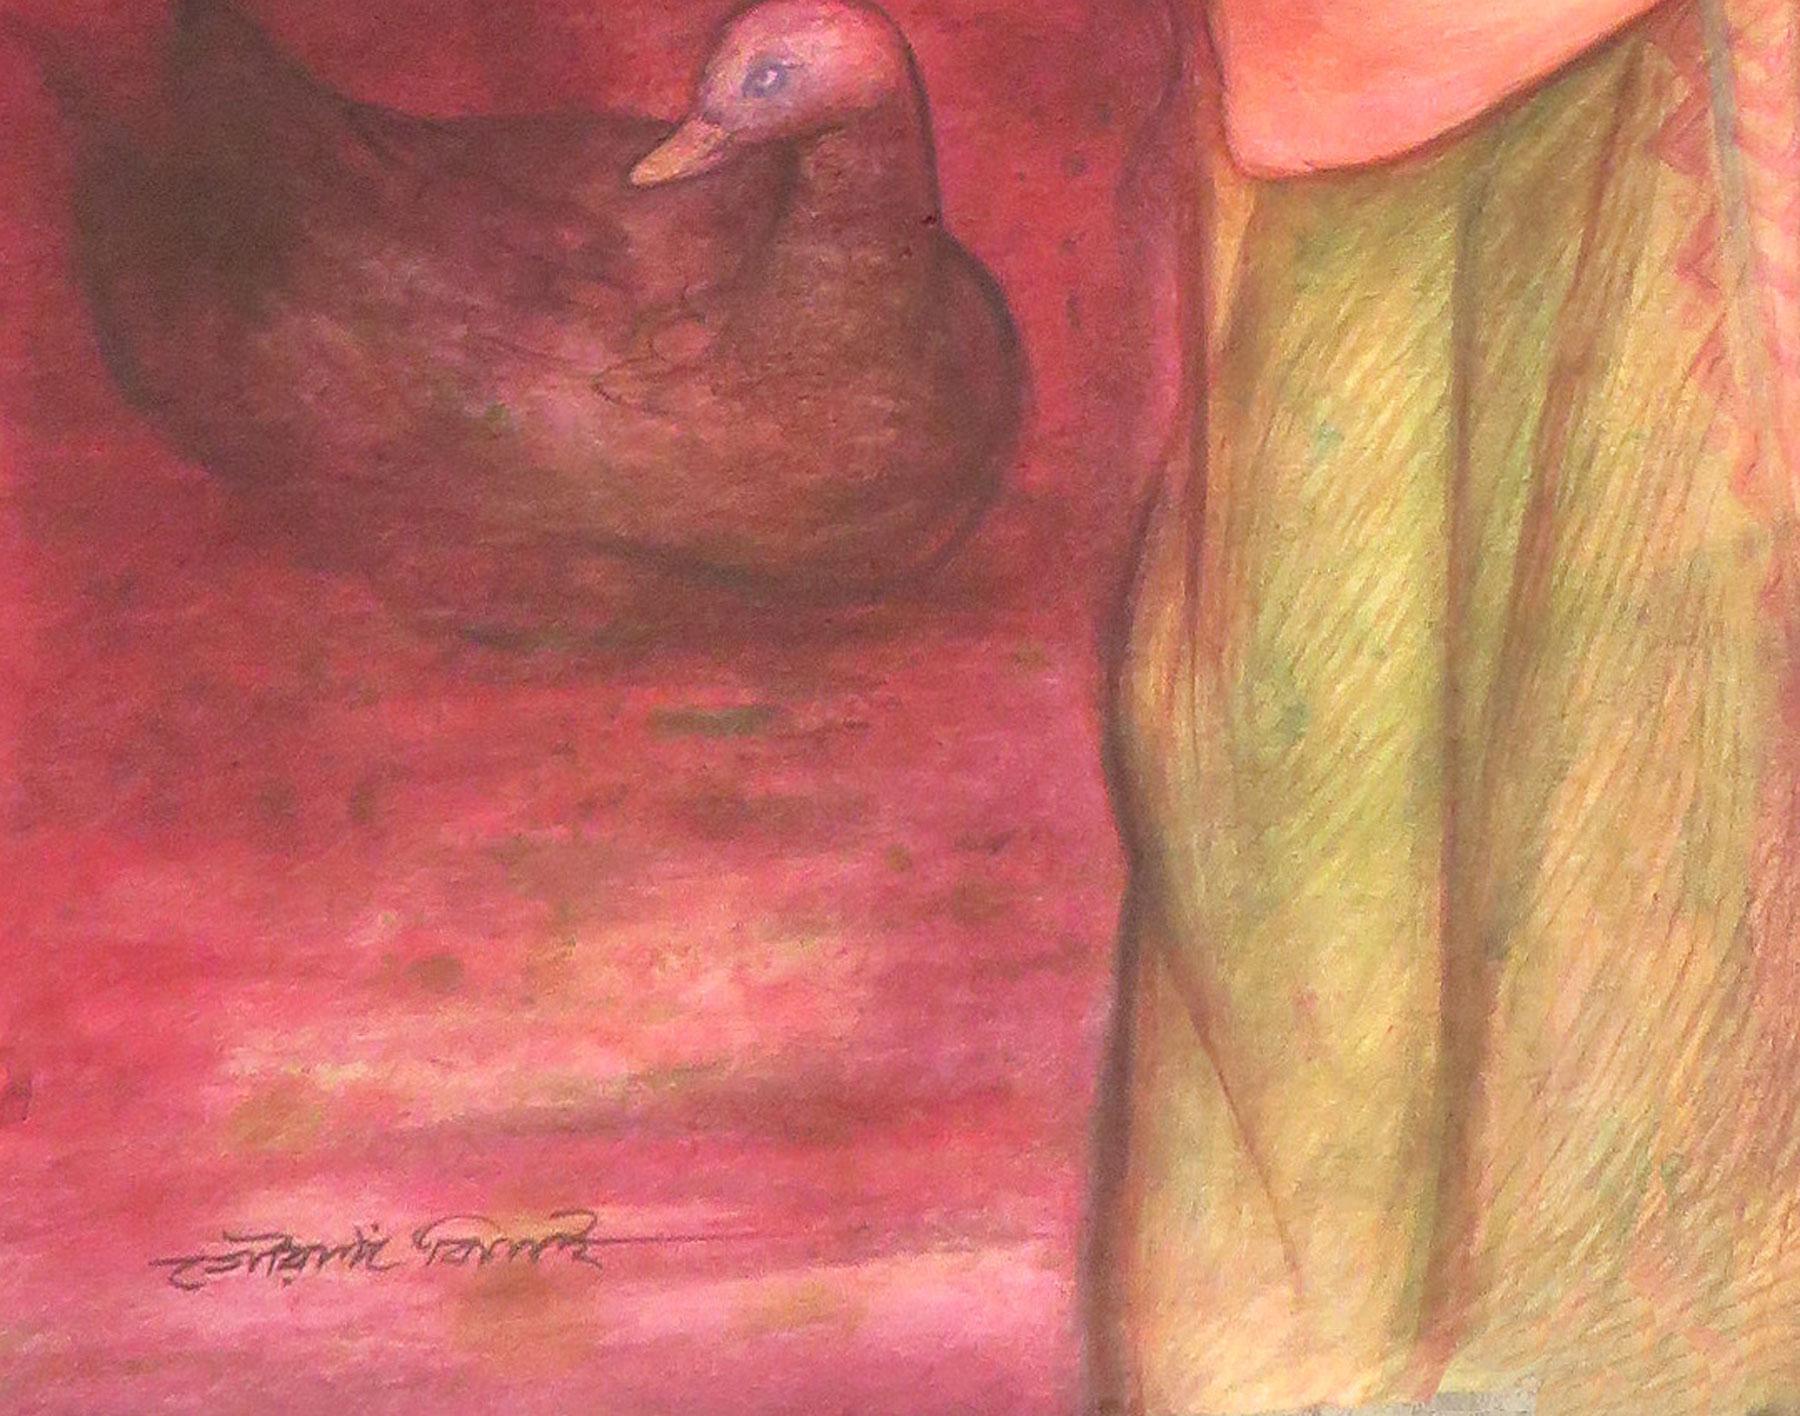 Gouranga Beshai - Lotus Pond - 30 x 20 pouces (non encadré)
Techniques mixtes, tempera et aquarelle sur papier
** Livré en rouleau

Gourango est autodidacte.  Il s'inspire du maître artiste Hemen Mazumdar, qui a rendu célèbre l'imagerie des femmes